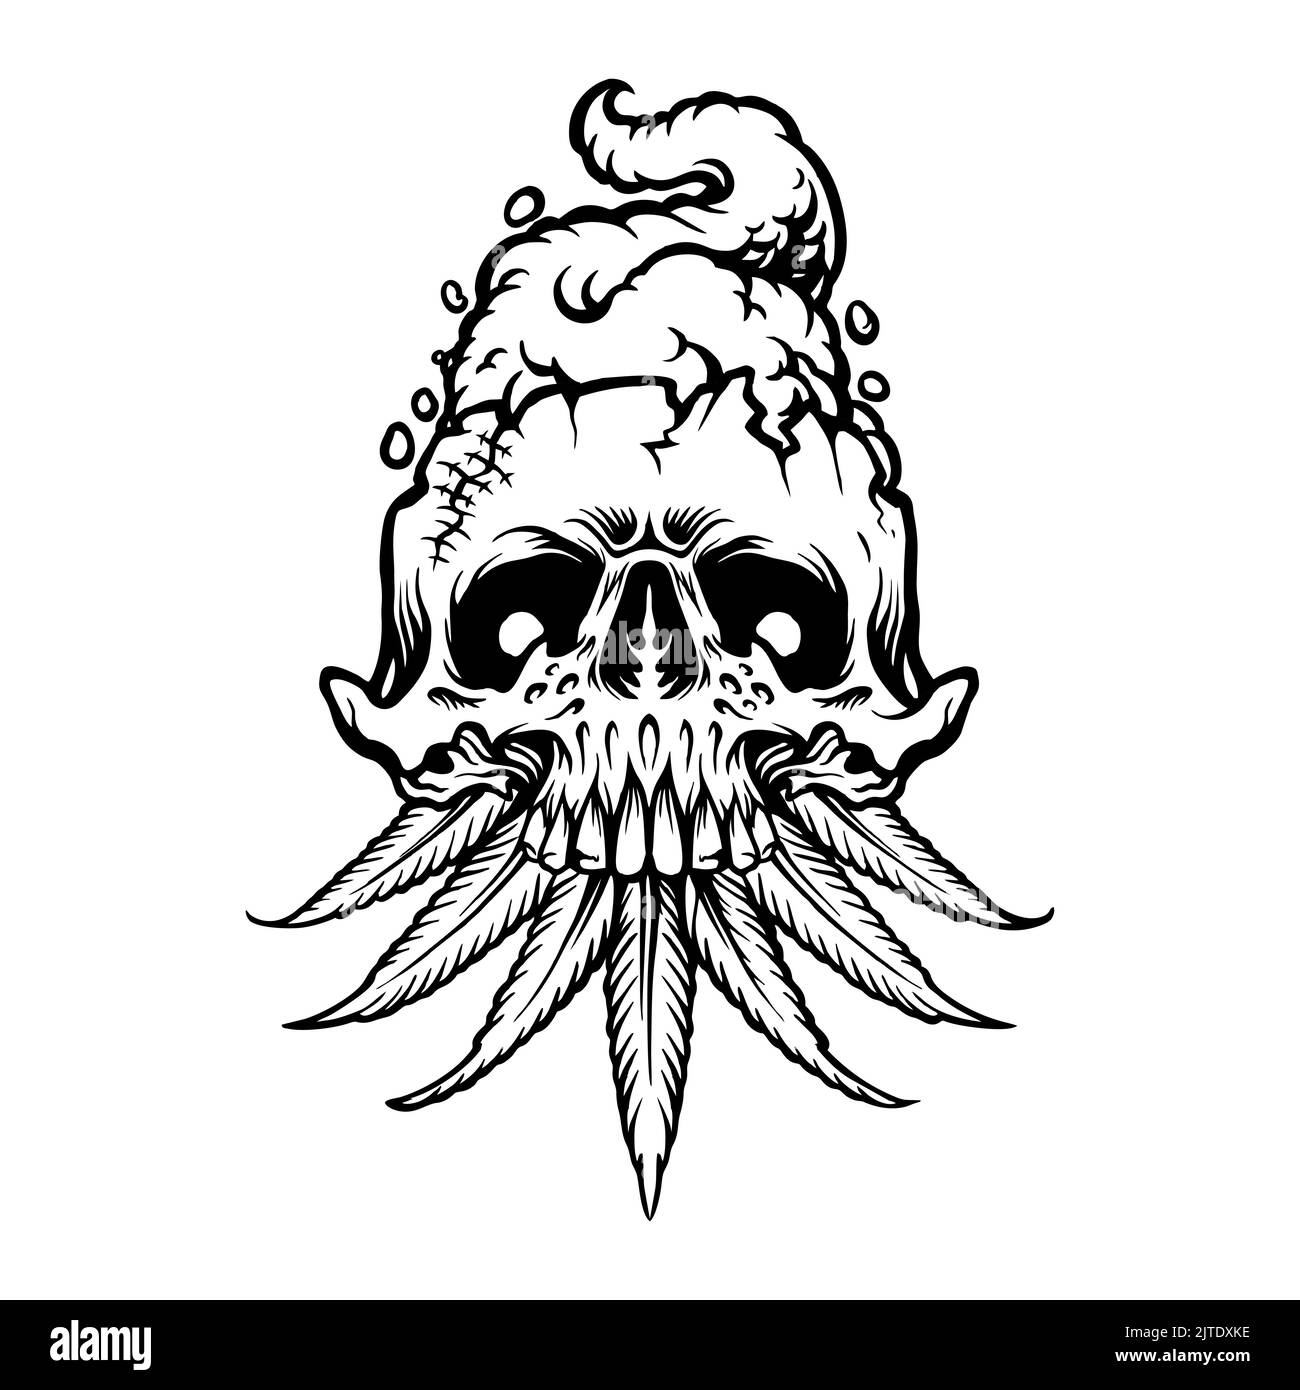 Burning Skull Eat Leaf Weed Cannabis illustrations vectorielles pour votre travail logo, t-shirt de marchandise de mascotte, autocollants et étiquettes, affiche, message d'accueil Banque D'Images